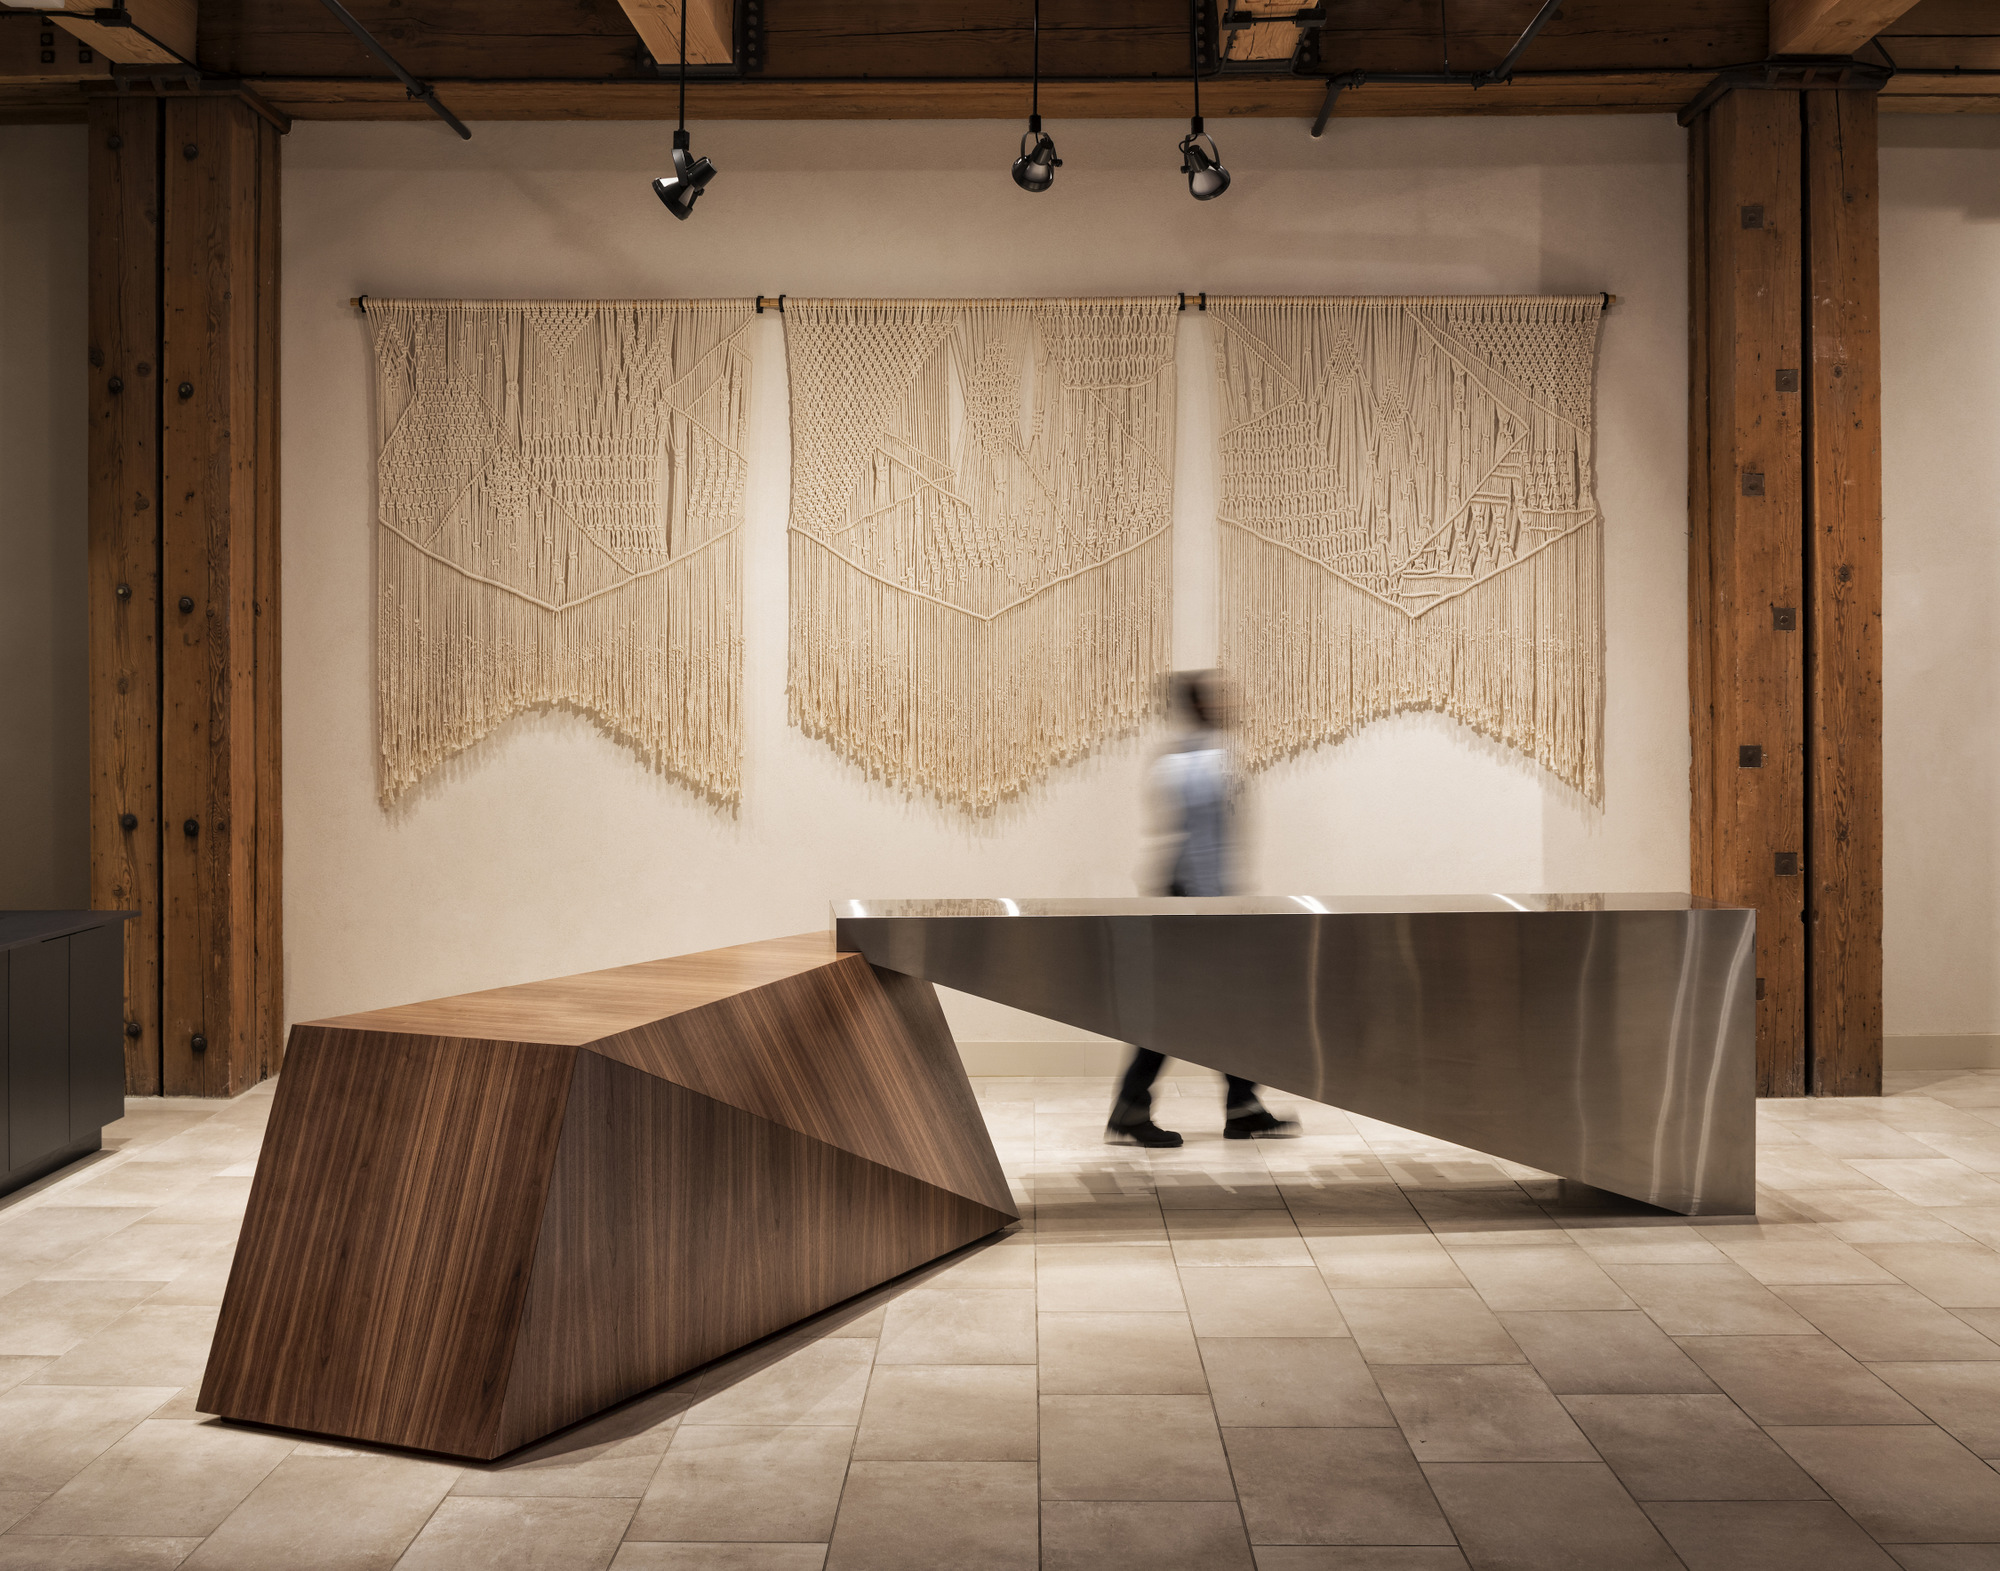 明尼阿波利斯米尔区希尔顿遮篷|ART-Arrakis | 建筑室内设计的创新与灵感